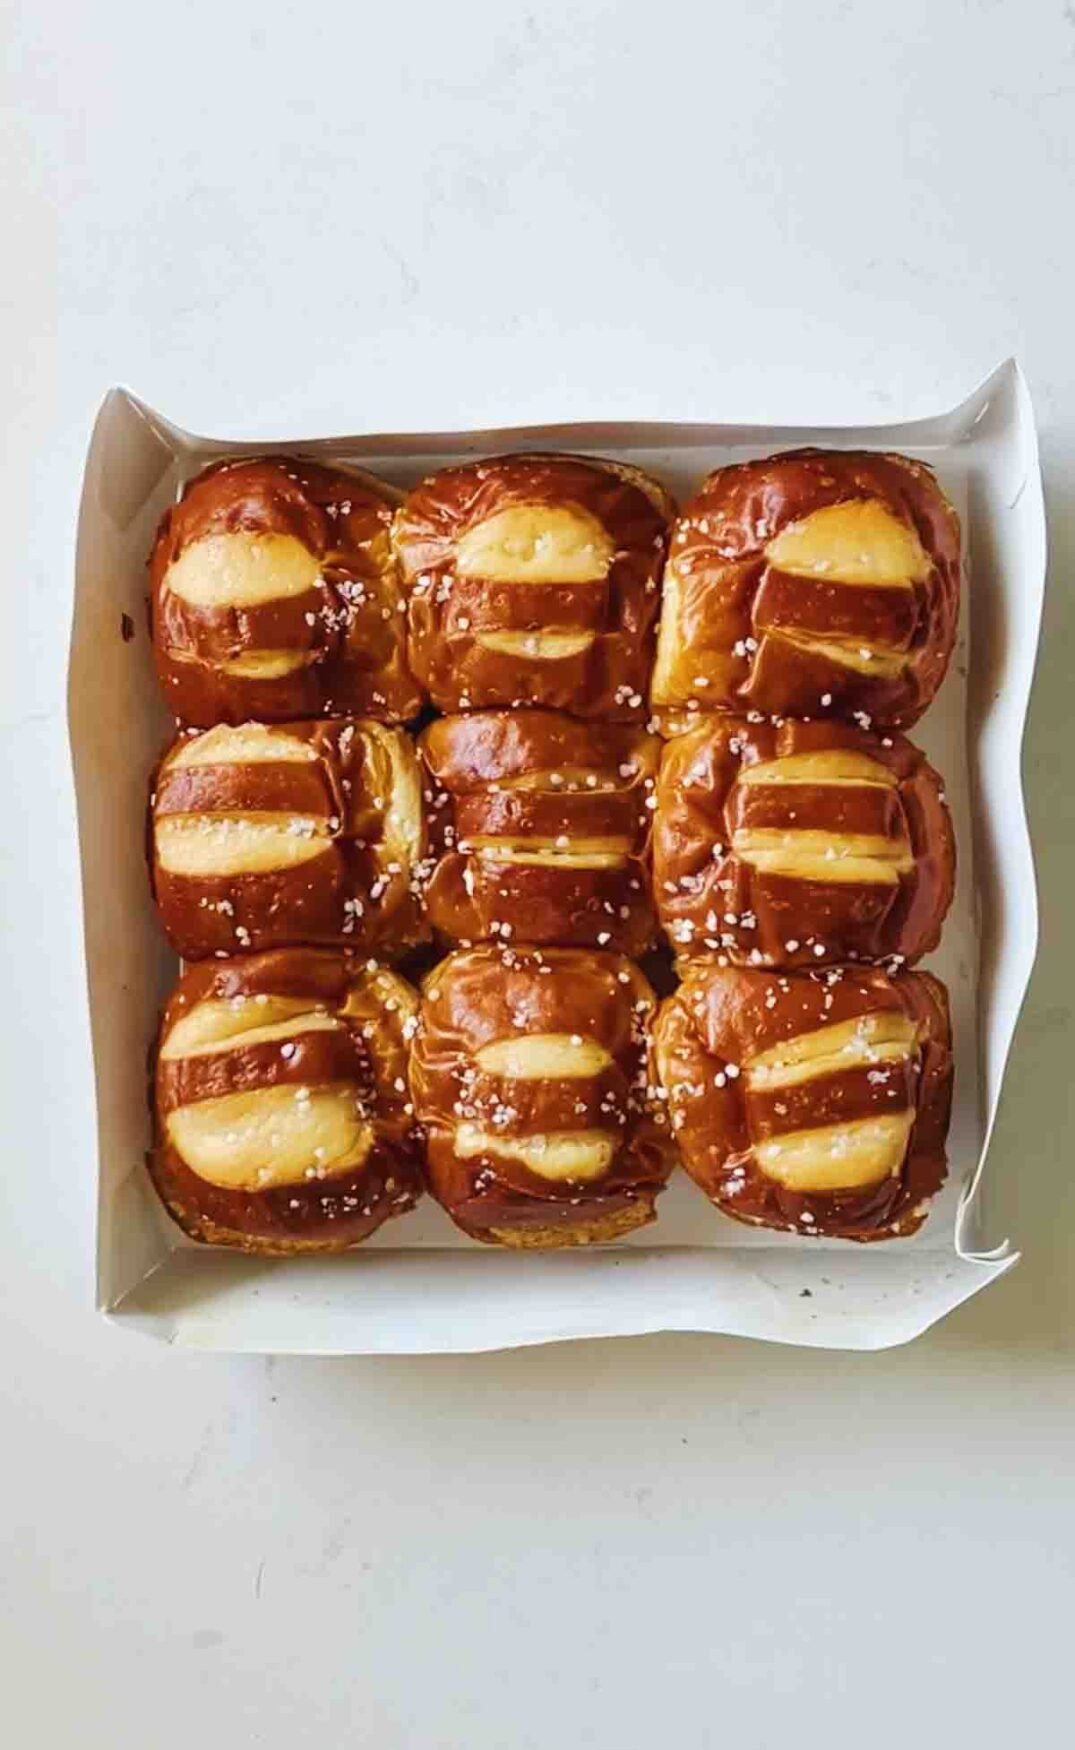 pretzel buns in a white box on a white countertop.